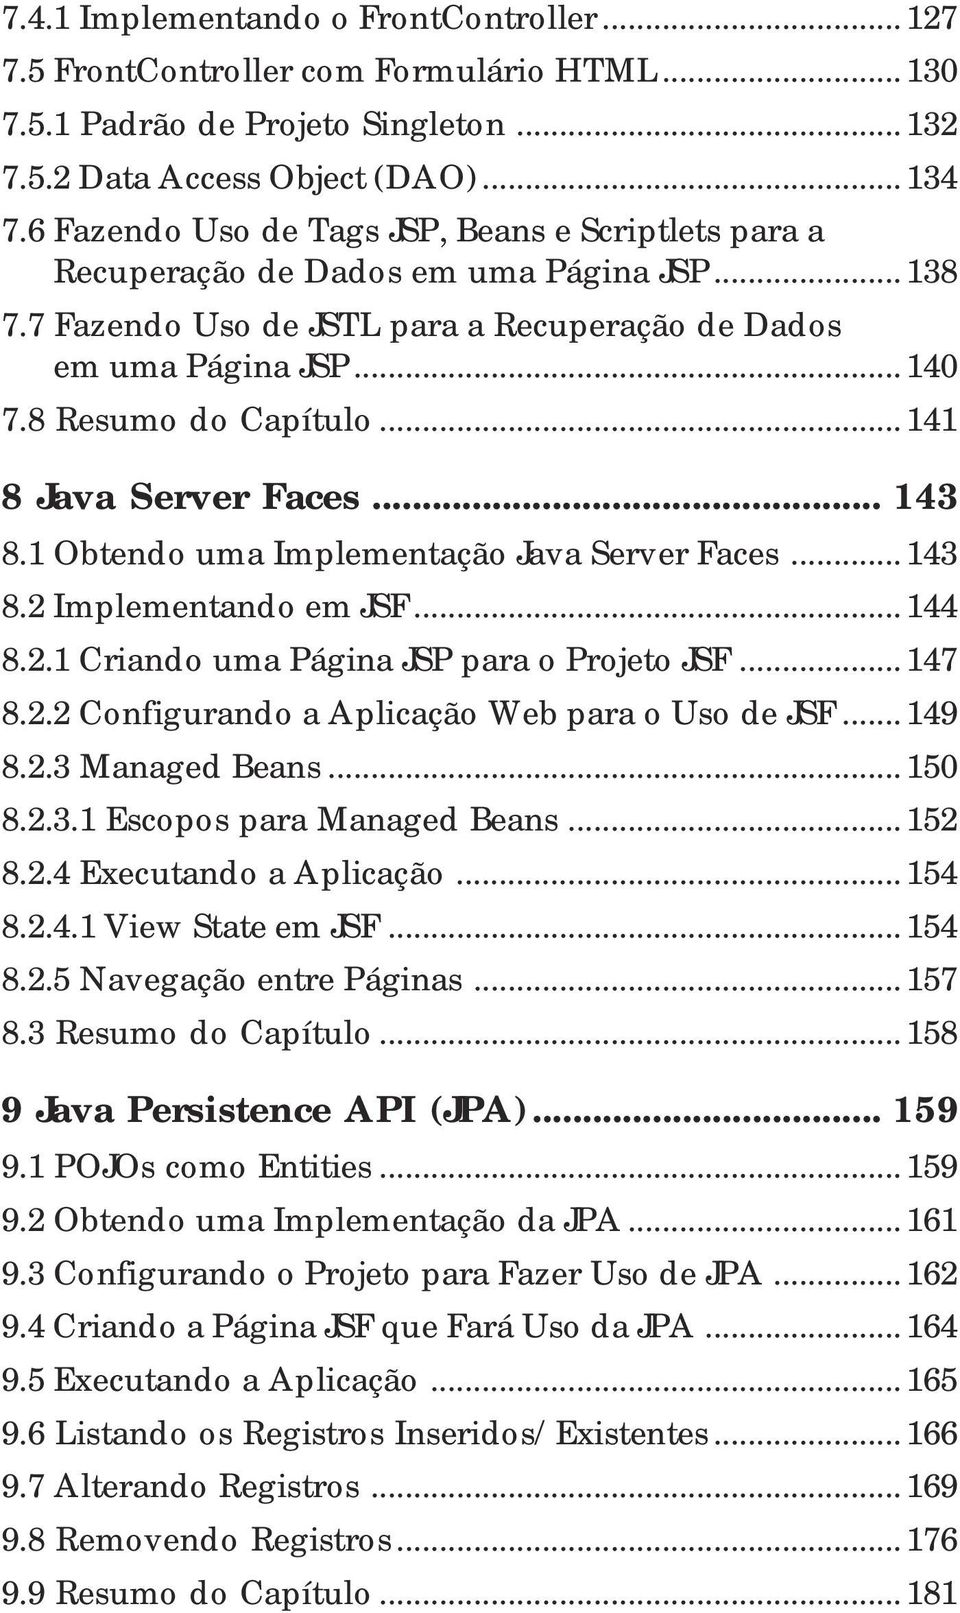 .. 141 8 Java Server Faces... 143 8.1 Obtendo uma Implementação Java Server Faces... 143 8.2 Implementando em JSF... 144 8.2.1 Criando uma Página JSP para o Projeto JSF... 147 8.2.2 Configurando a Aplicação Web para o Uso de JSF.